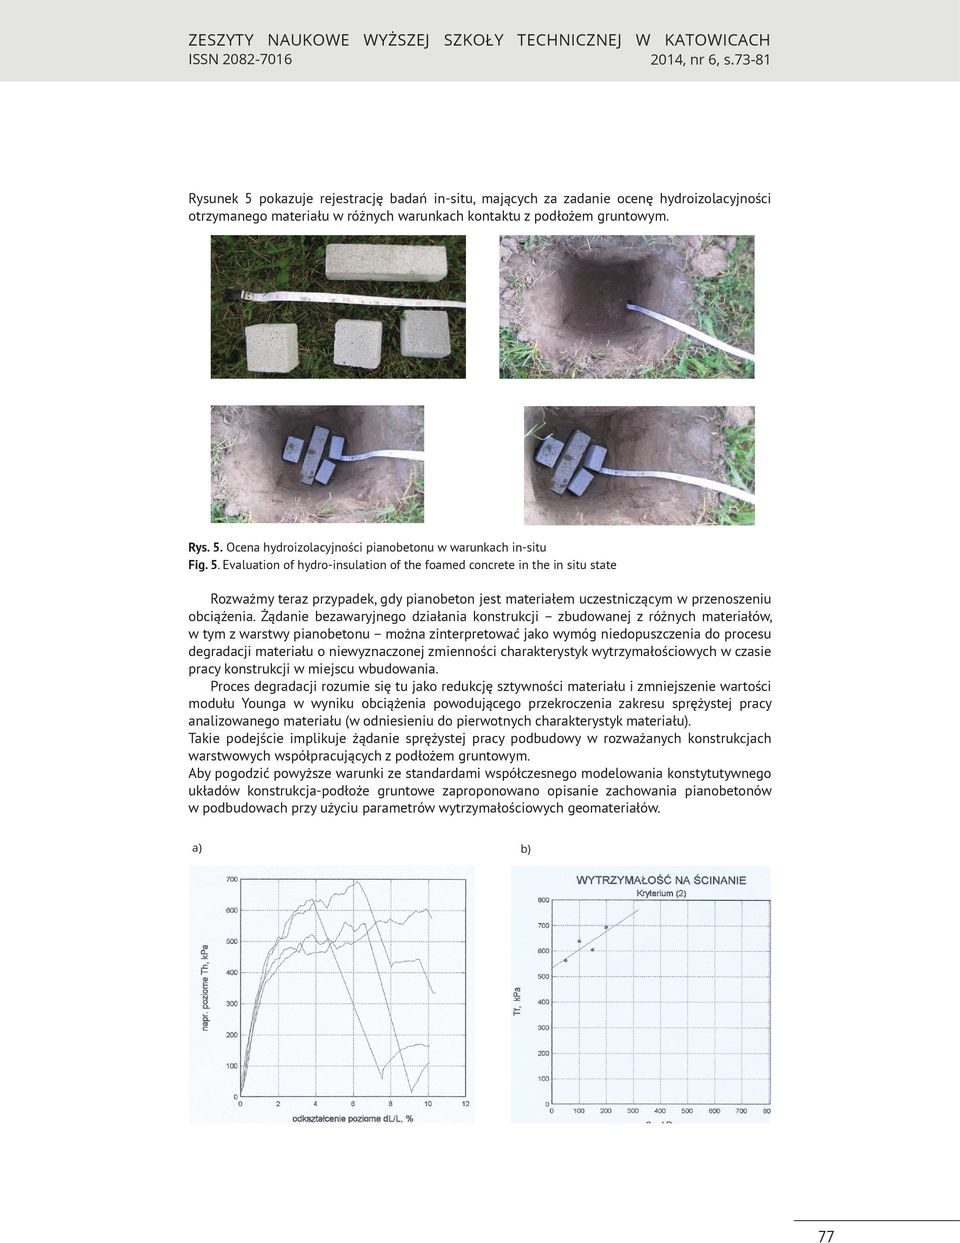 Ocena hydroizolacyjności pianobetonu w warunkach in-situ Fig. 5.